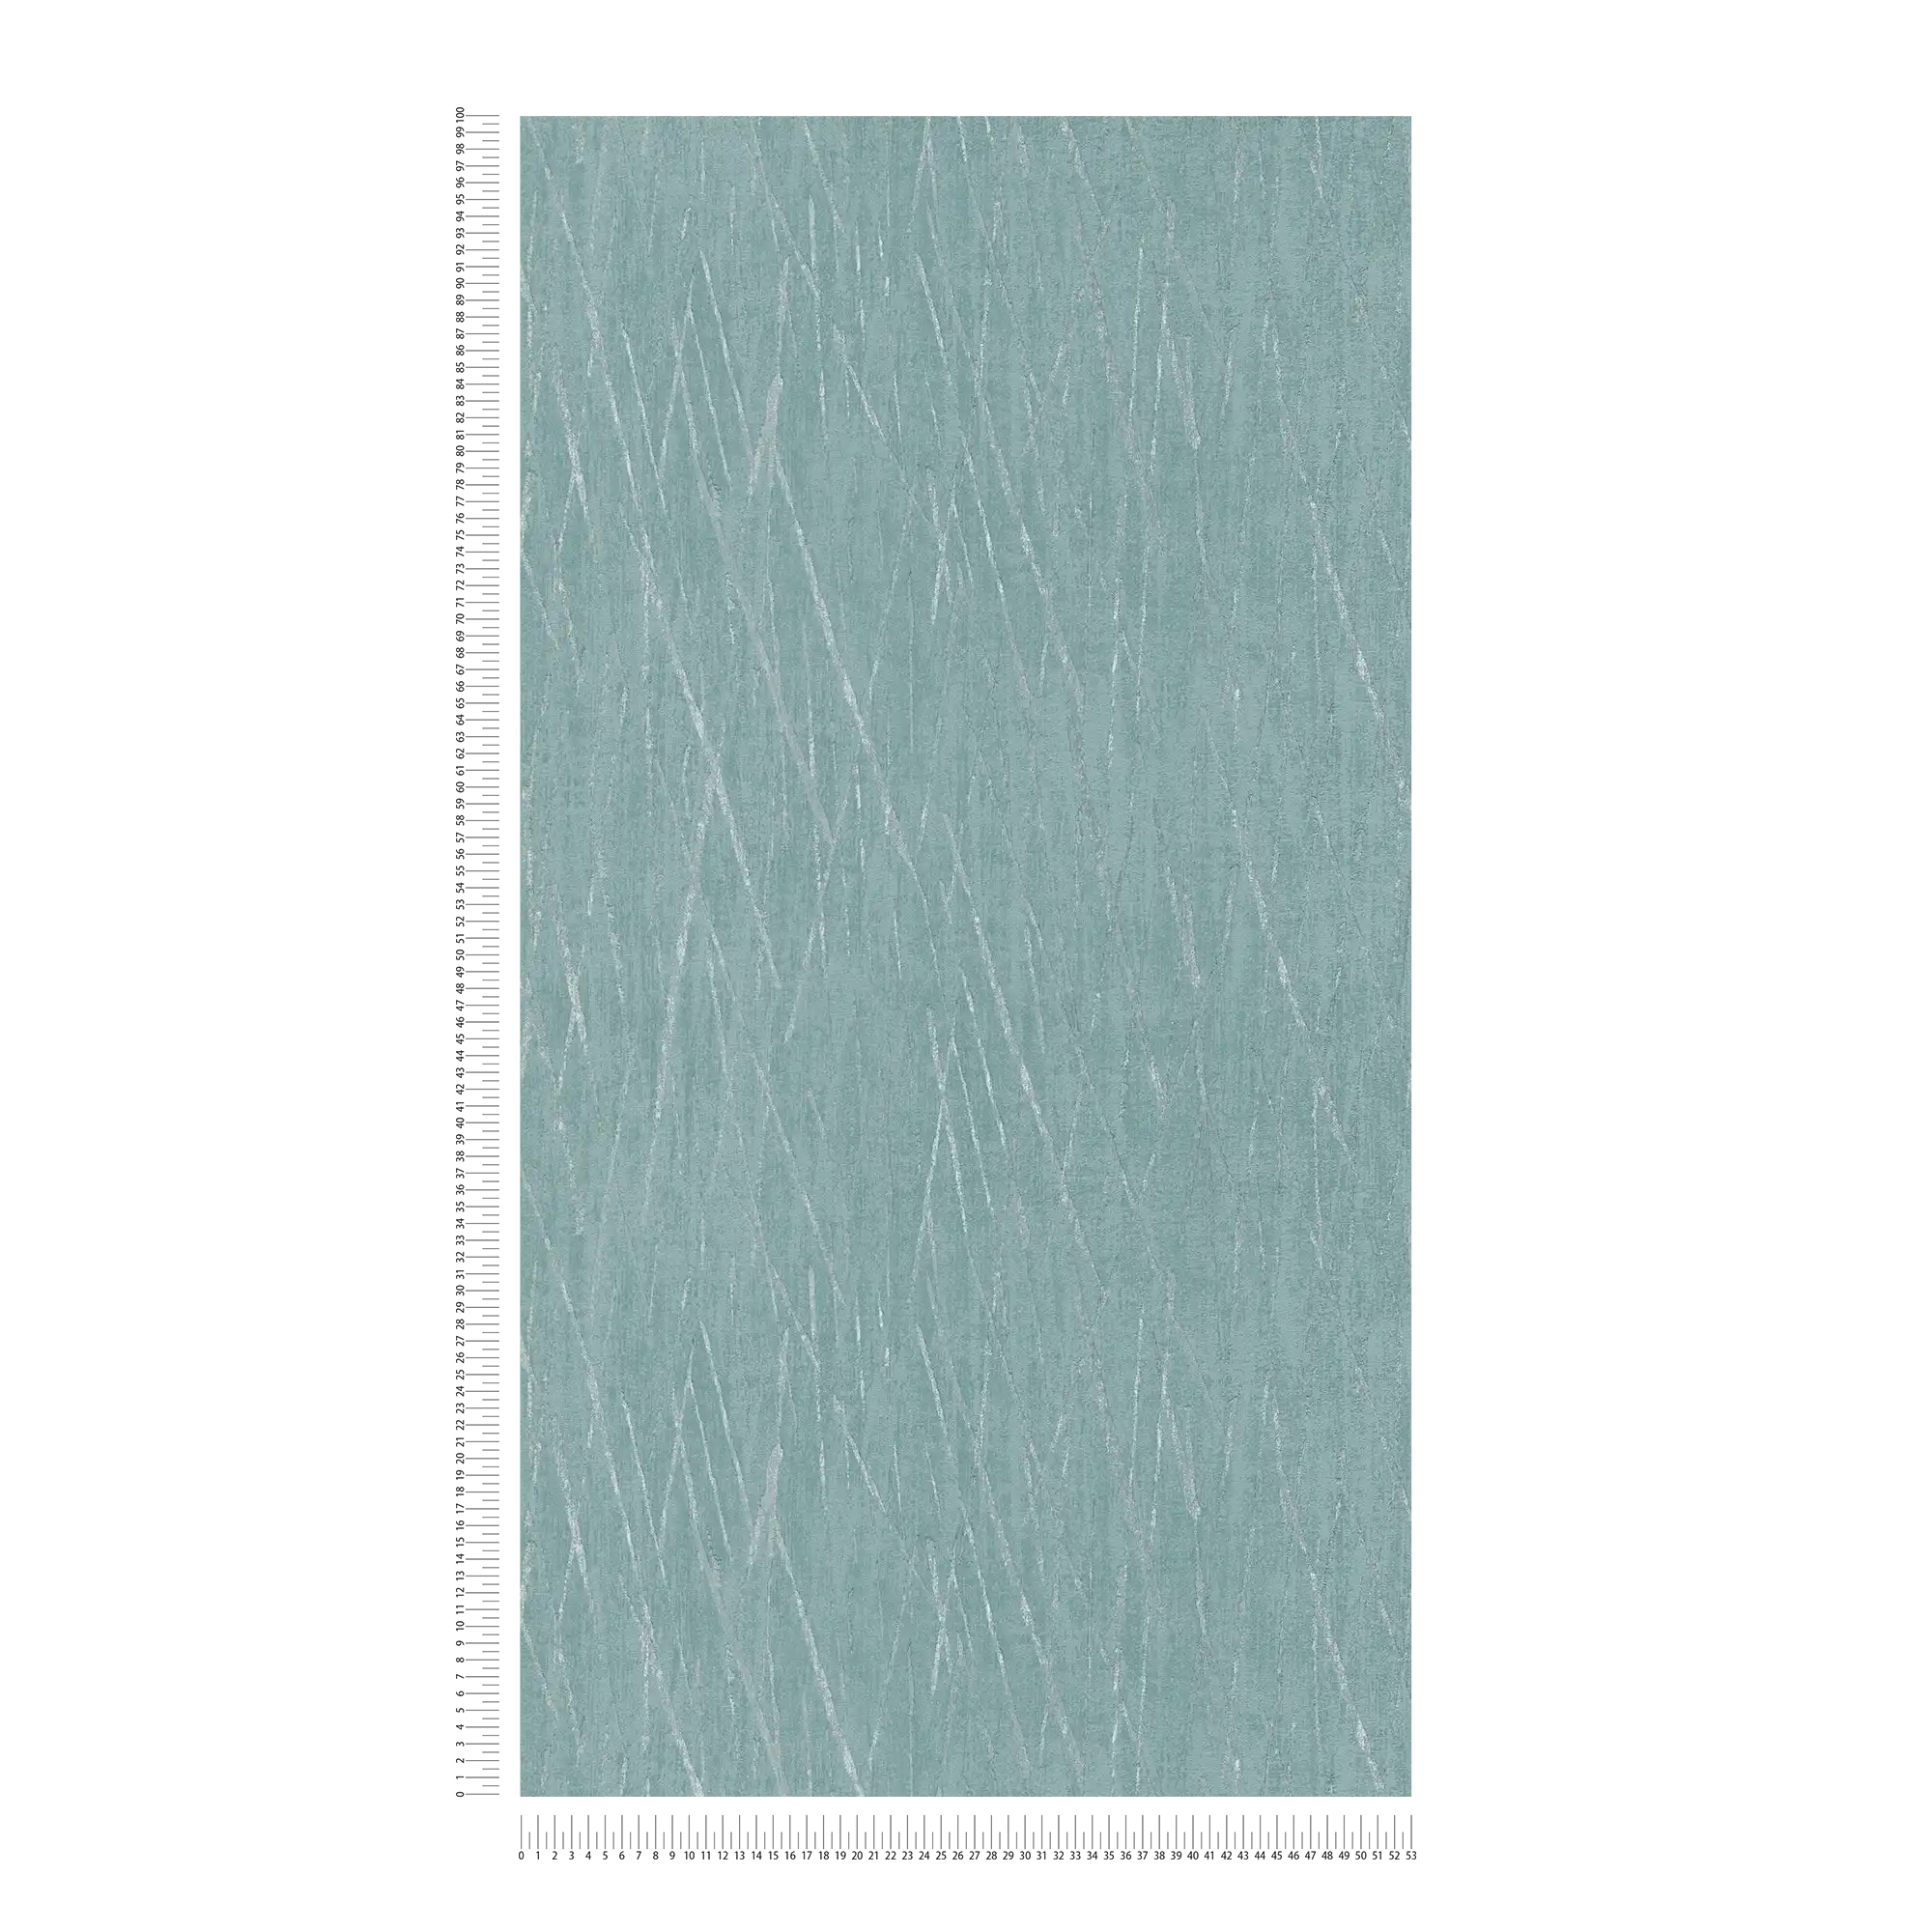             Strukturtapete mit Metallic Farben – Blau, Grün, Silber
        